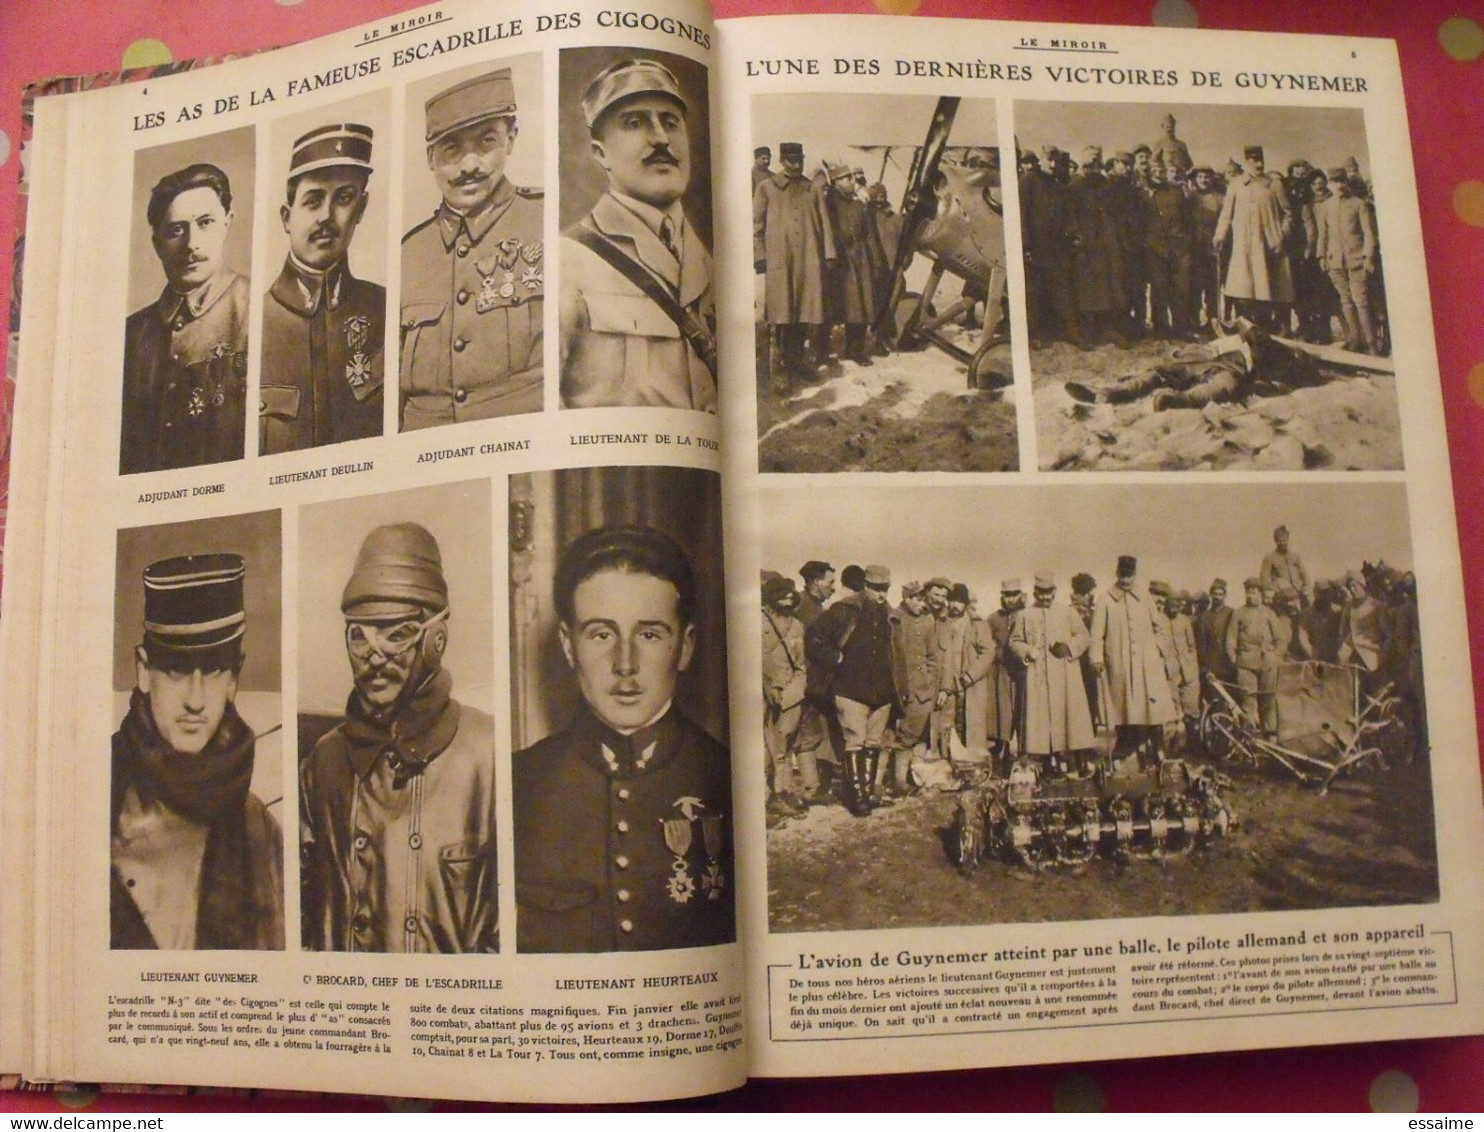 Le miroir recueil reliure 1917 (52 n°). guerre14-18 très illustrée, documentée. révolution russe bolcheviks